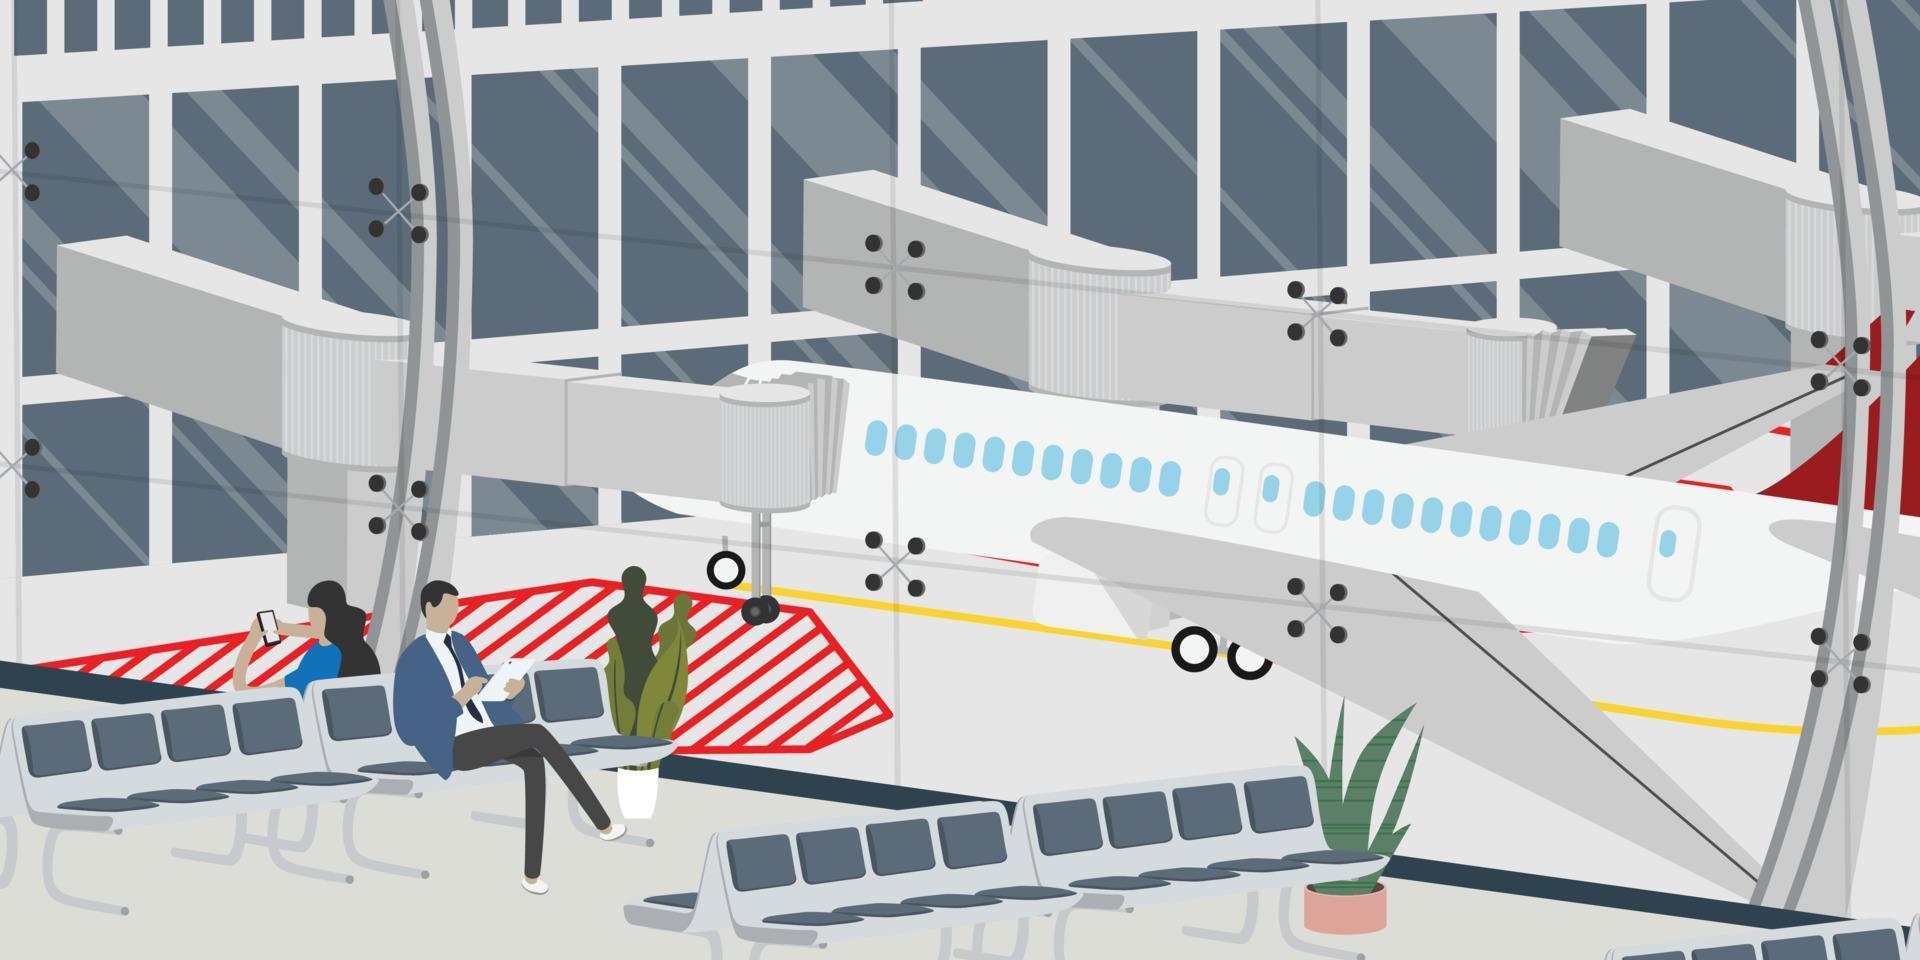 turistas de la zona de salida del aeropuerto con equipaje esperando relajarse en la terminal de la sala de salida para embarcar en el avión de salida, ilustración de vectores de aviones de viajeros